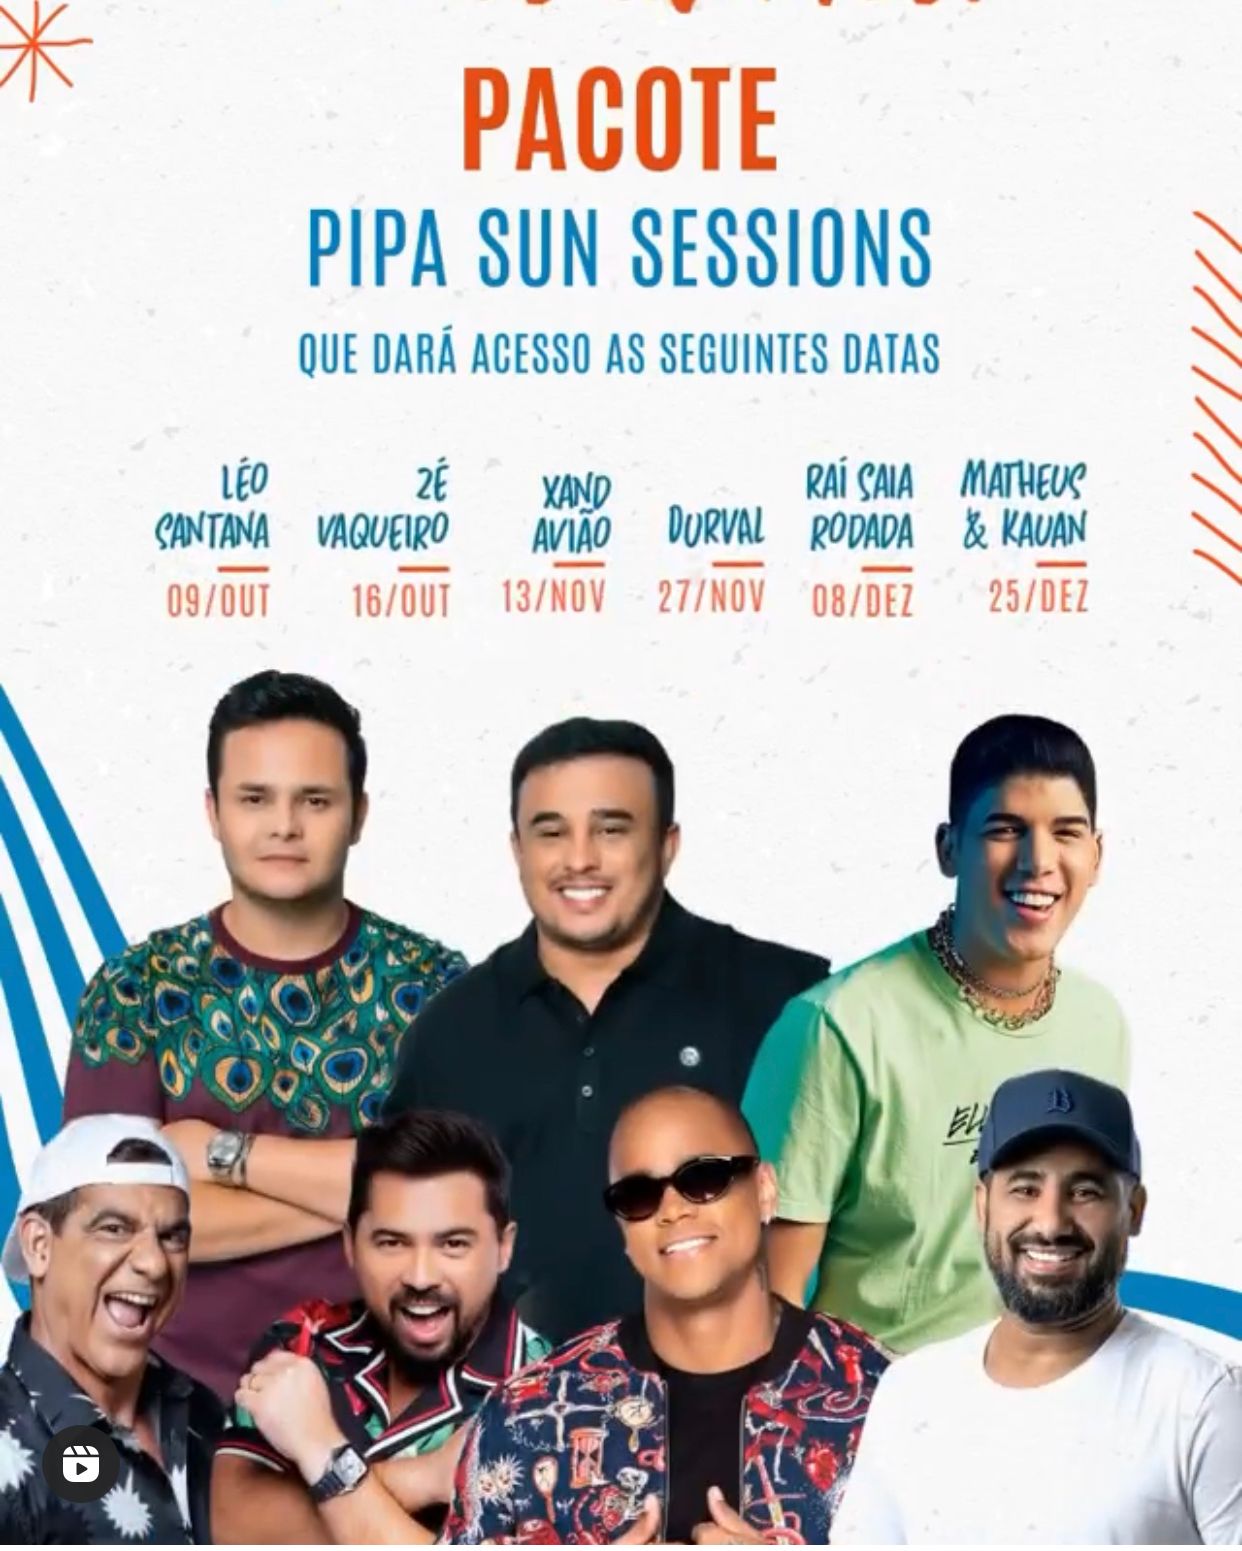 Zé Vaqueiro é atração confirmada no Pipa Sun Sessions que já anuncia data dos shows de Xand Avião, Durval, Raí Saia Rodada, Matheus e Kauan 23